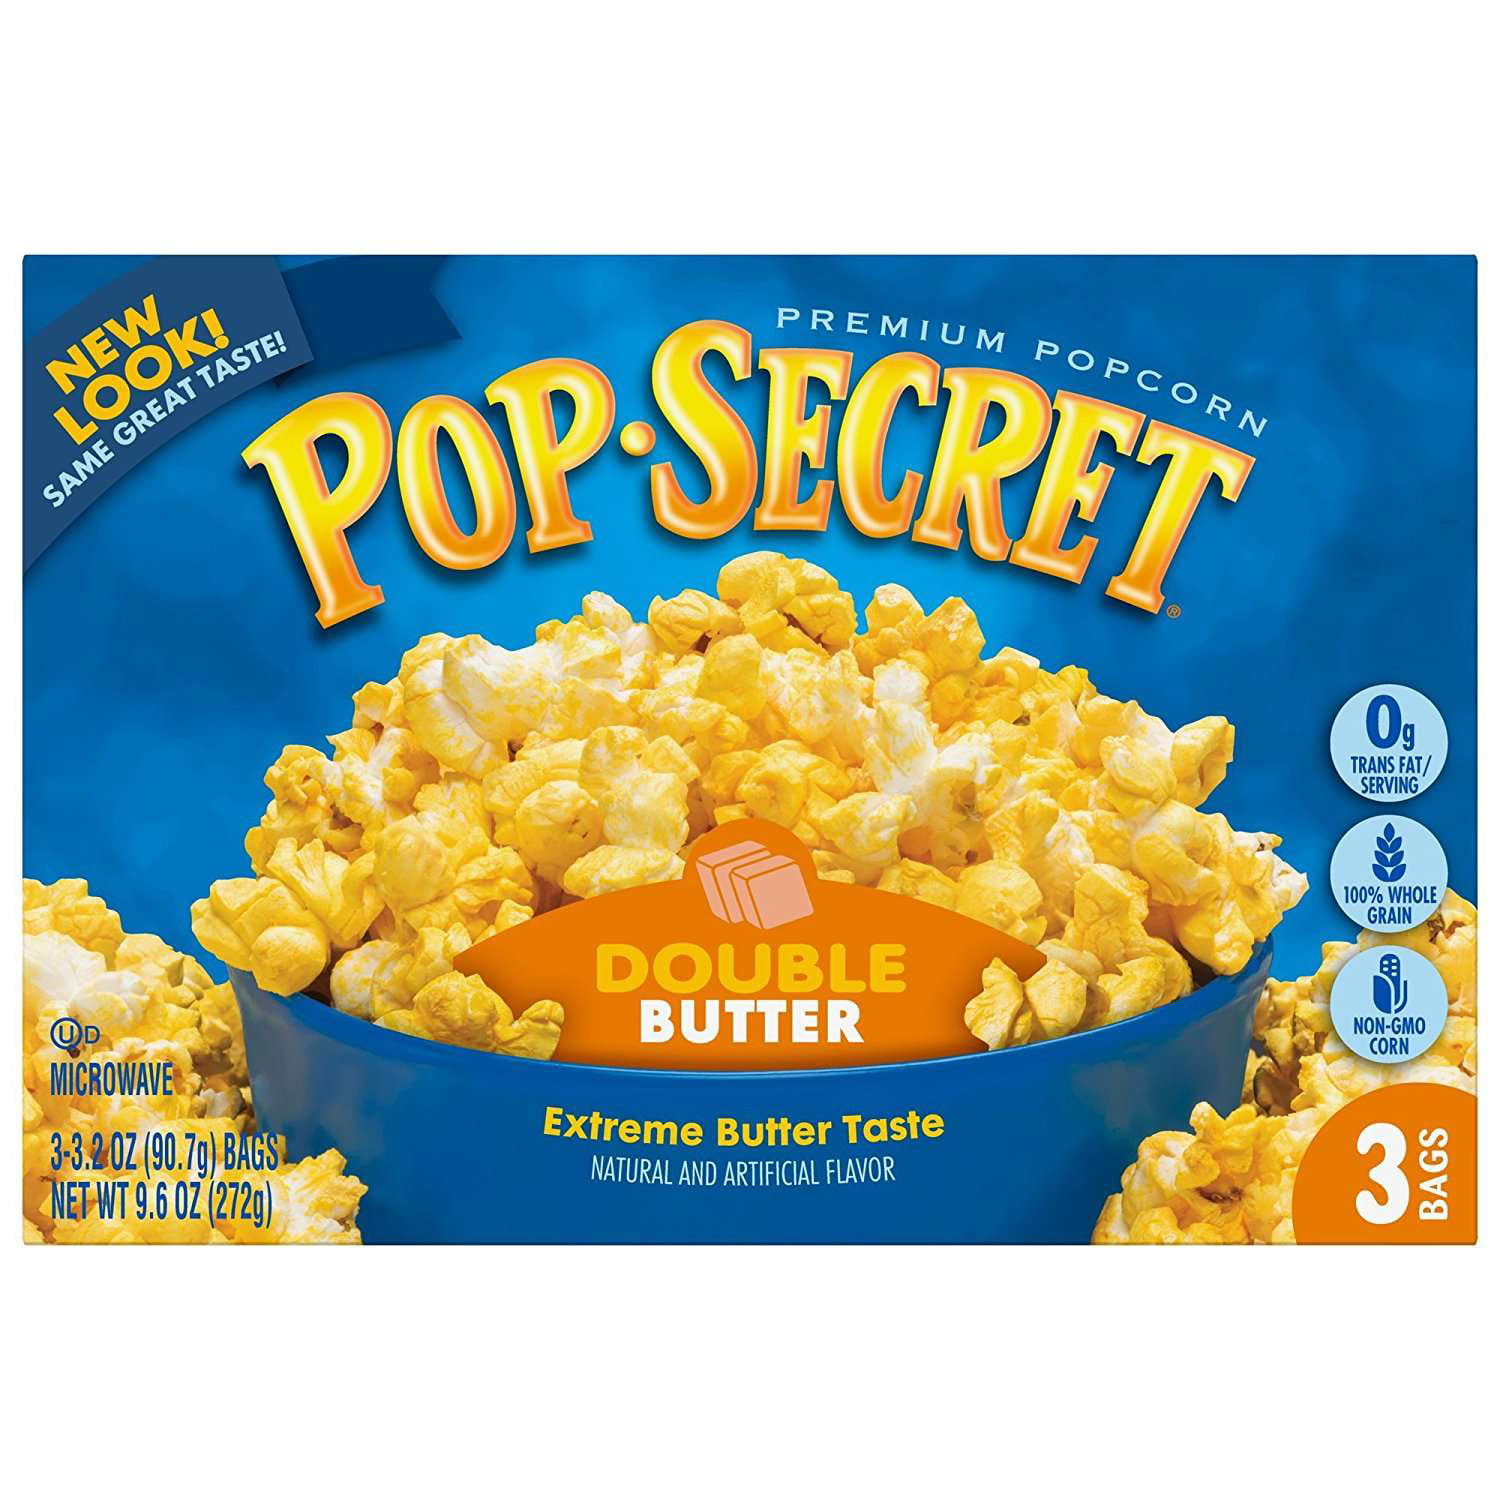 Pop Secret Microwave Popcorn, Double Butter, 3.2 Oz, 3 Ct - Walmart.com